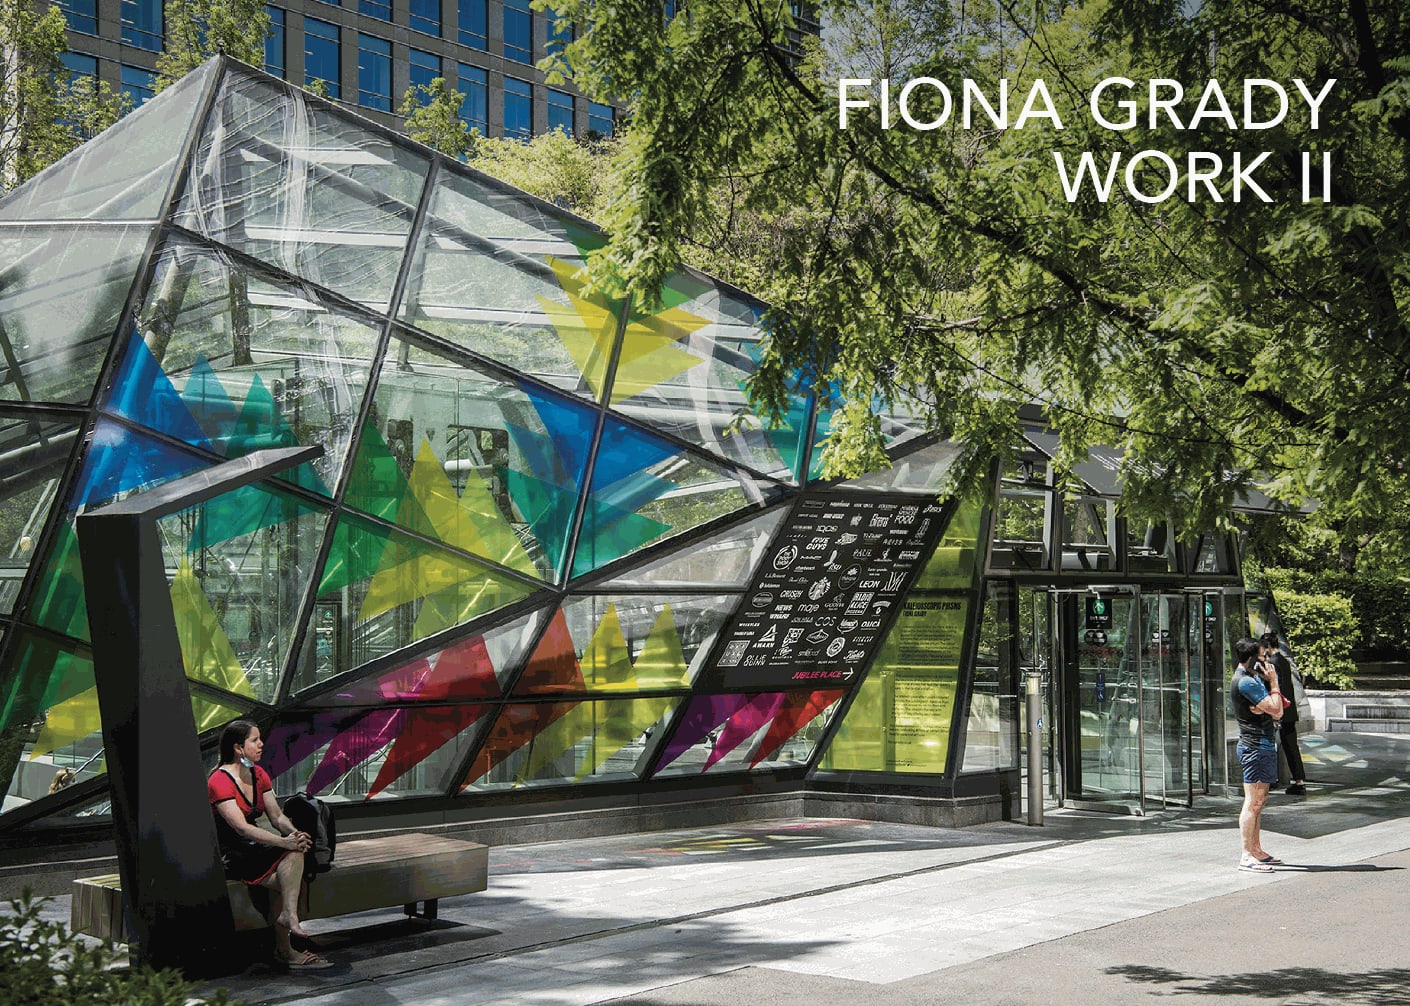 Fiona Grady WORK II